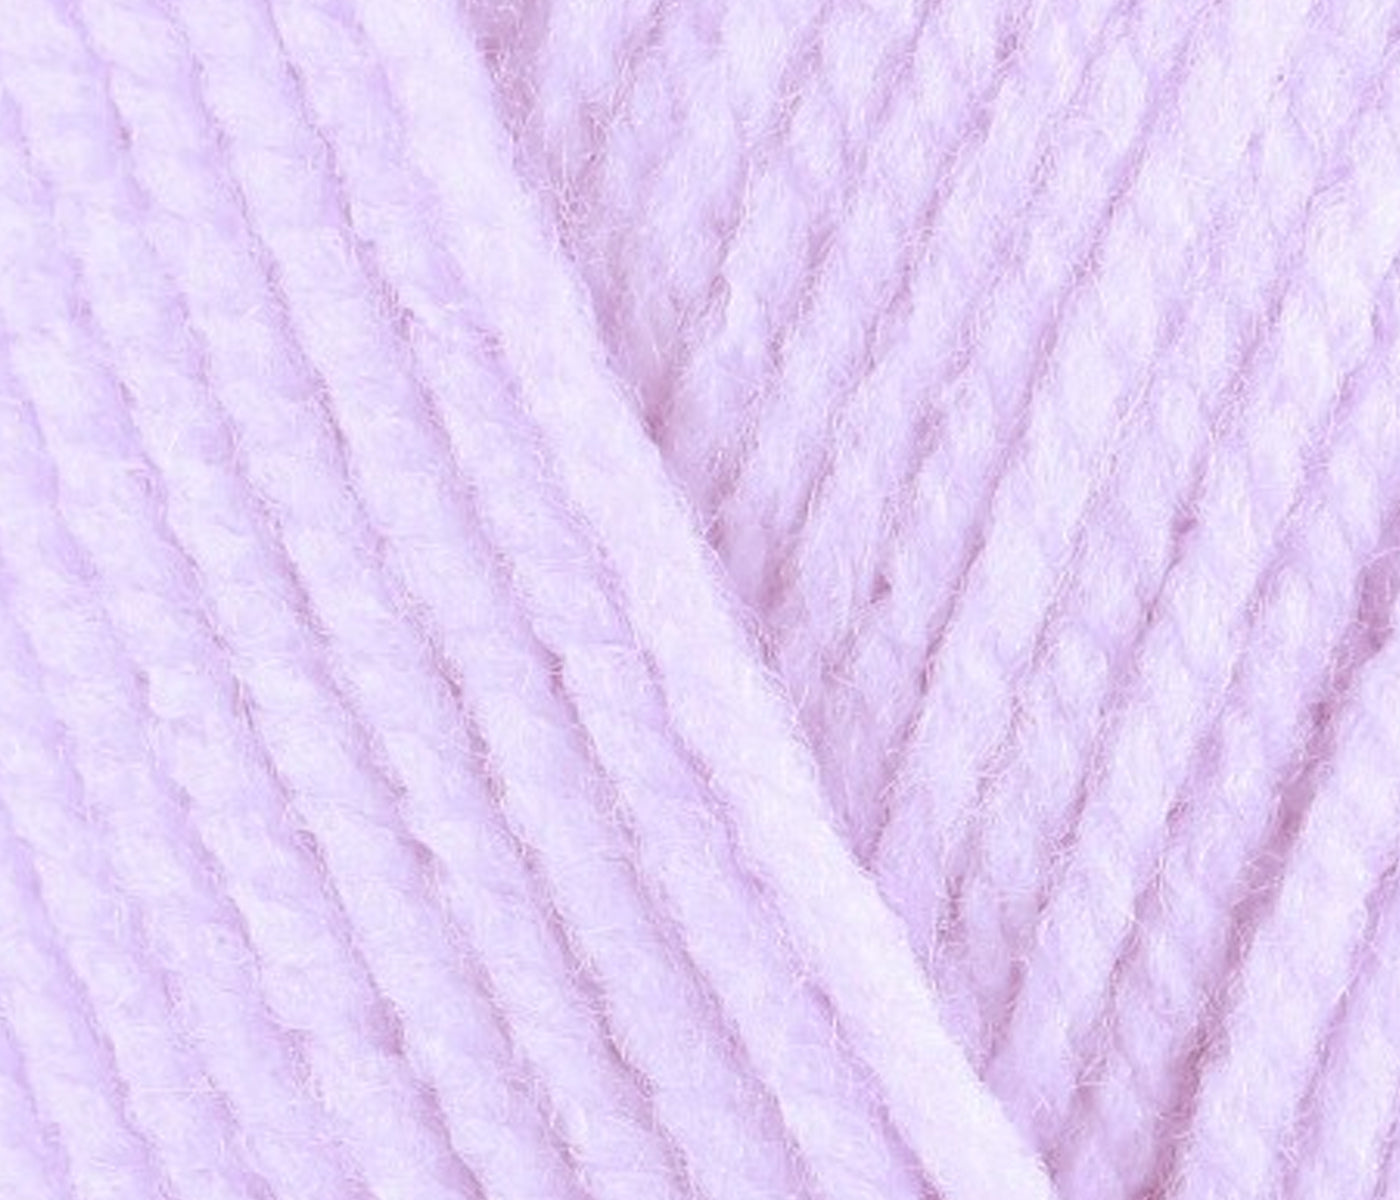 Magpie Jumper | Knitting Kit